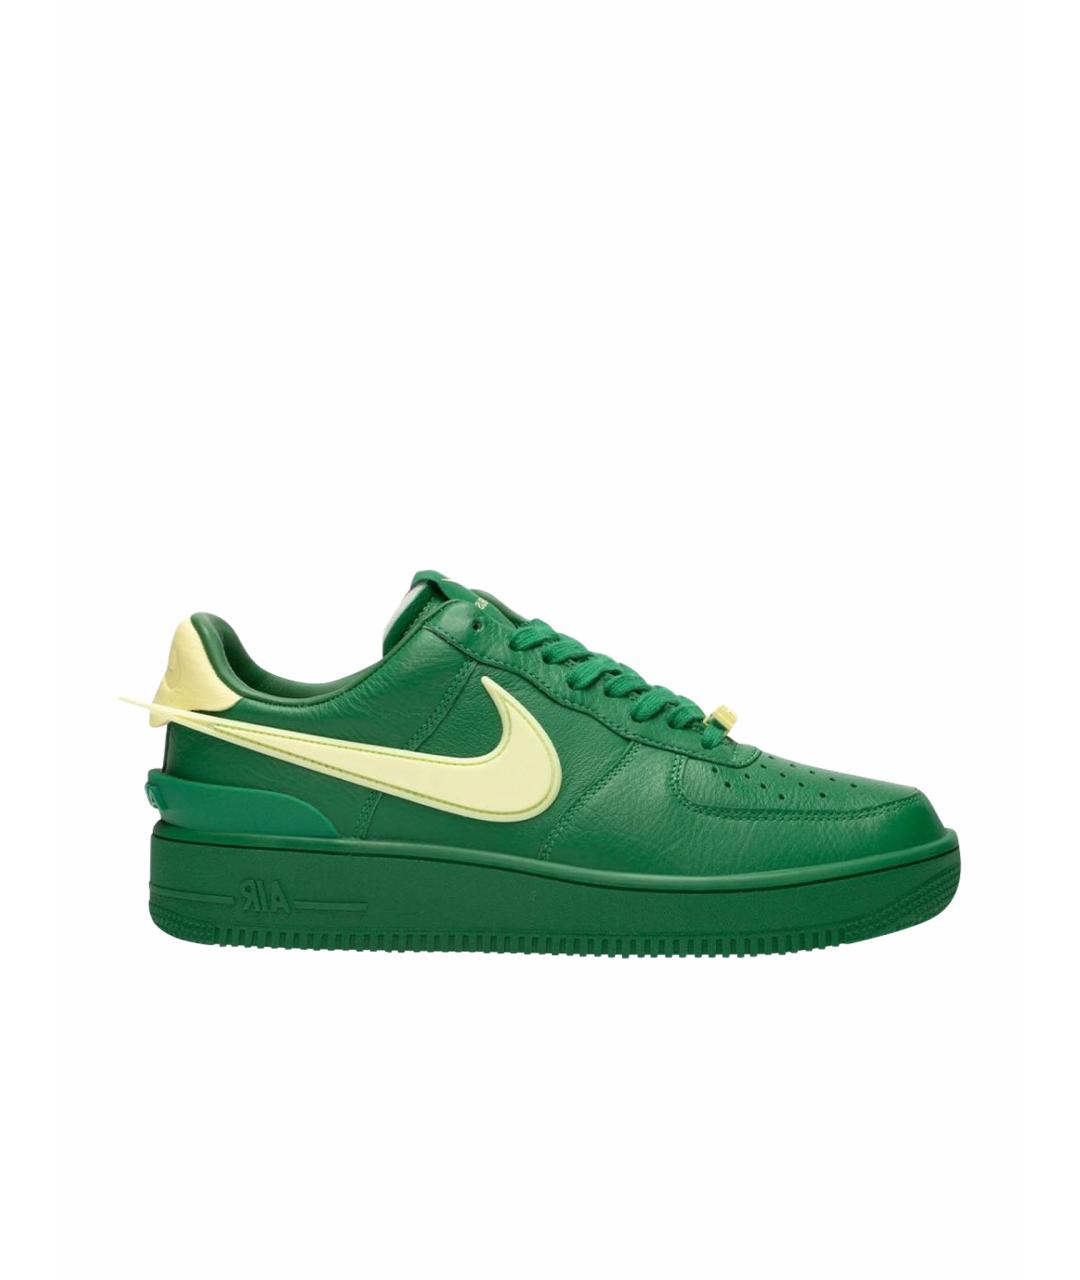 AMBUSH Зеленые кожаные низкие кроссовки / кеды, фото 1